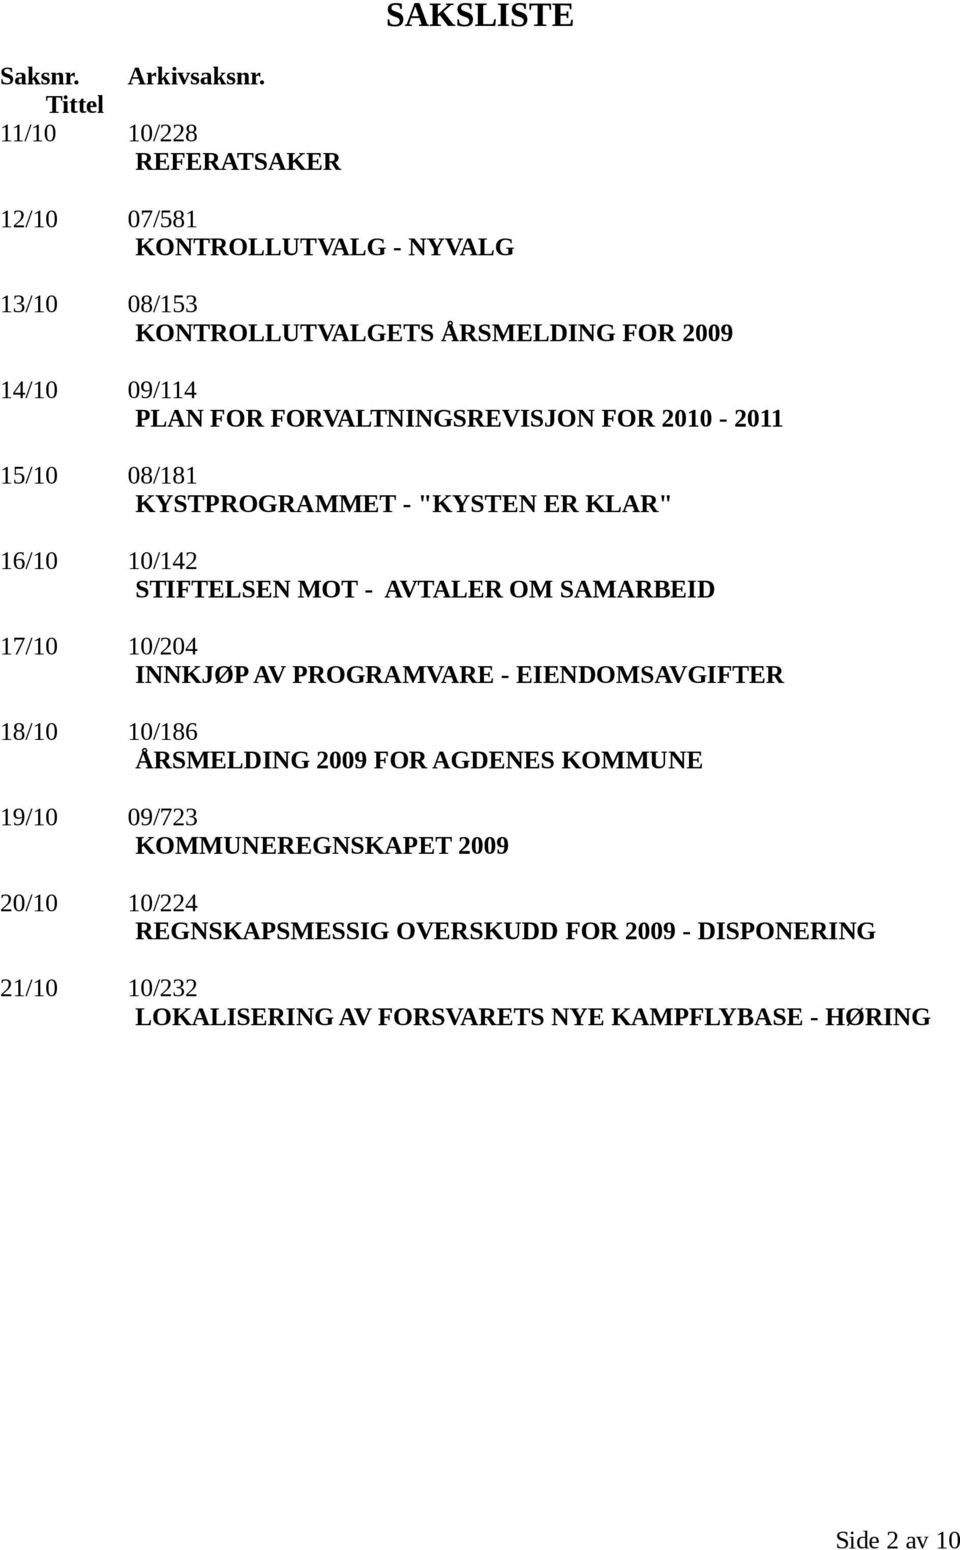 FORVALTNINGSREVISJON FOR 2010-2011 15/10 08/181 KYSTPROGRAMMET - "KYSTEN ER KLAR" 16/10 10/142 STIFTELSEN MOT - AVTALER OM SAMARBEID 17/10 10/204